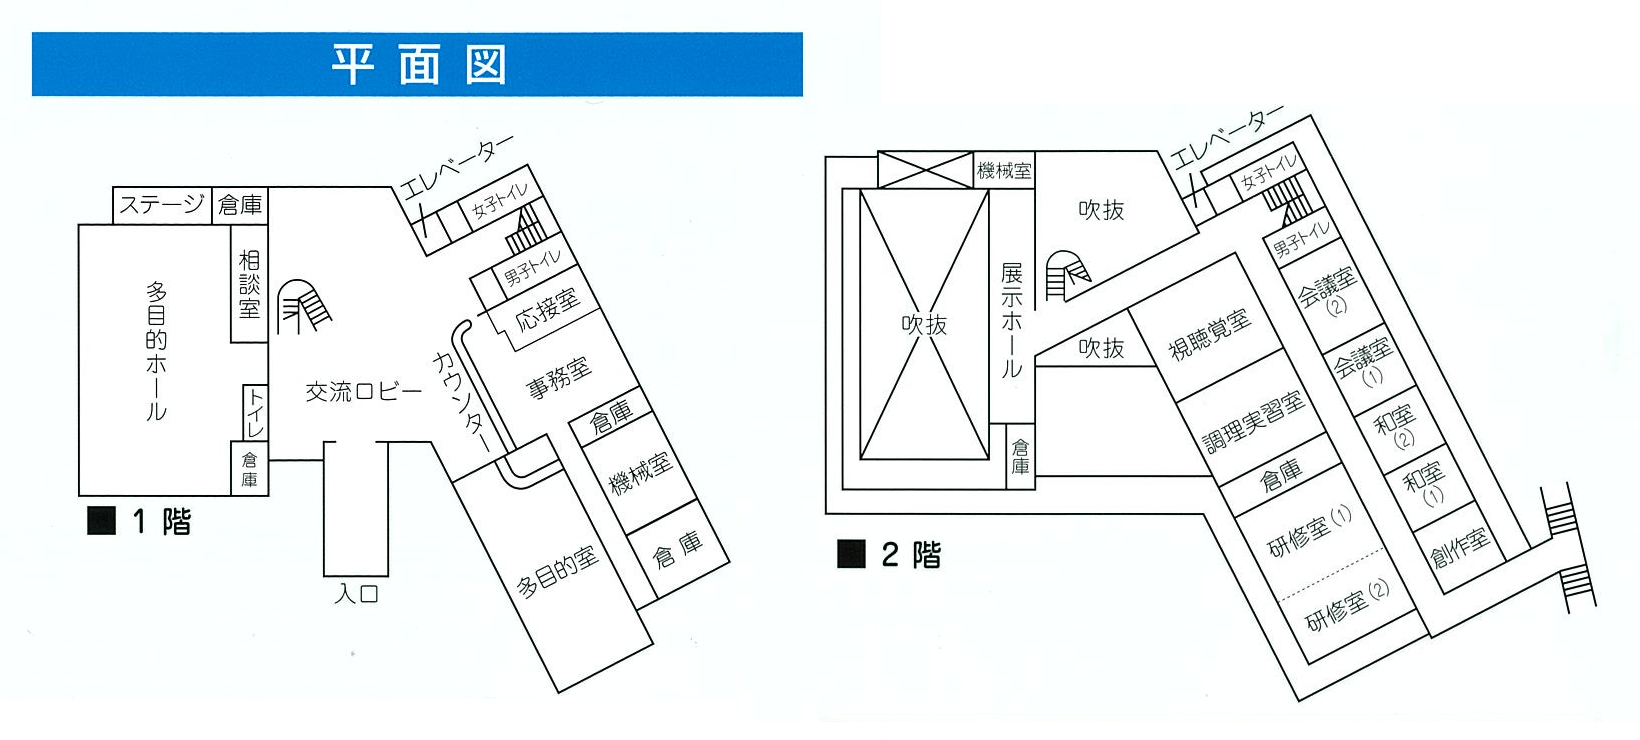 長浦公民館 平面図